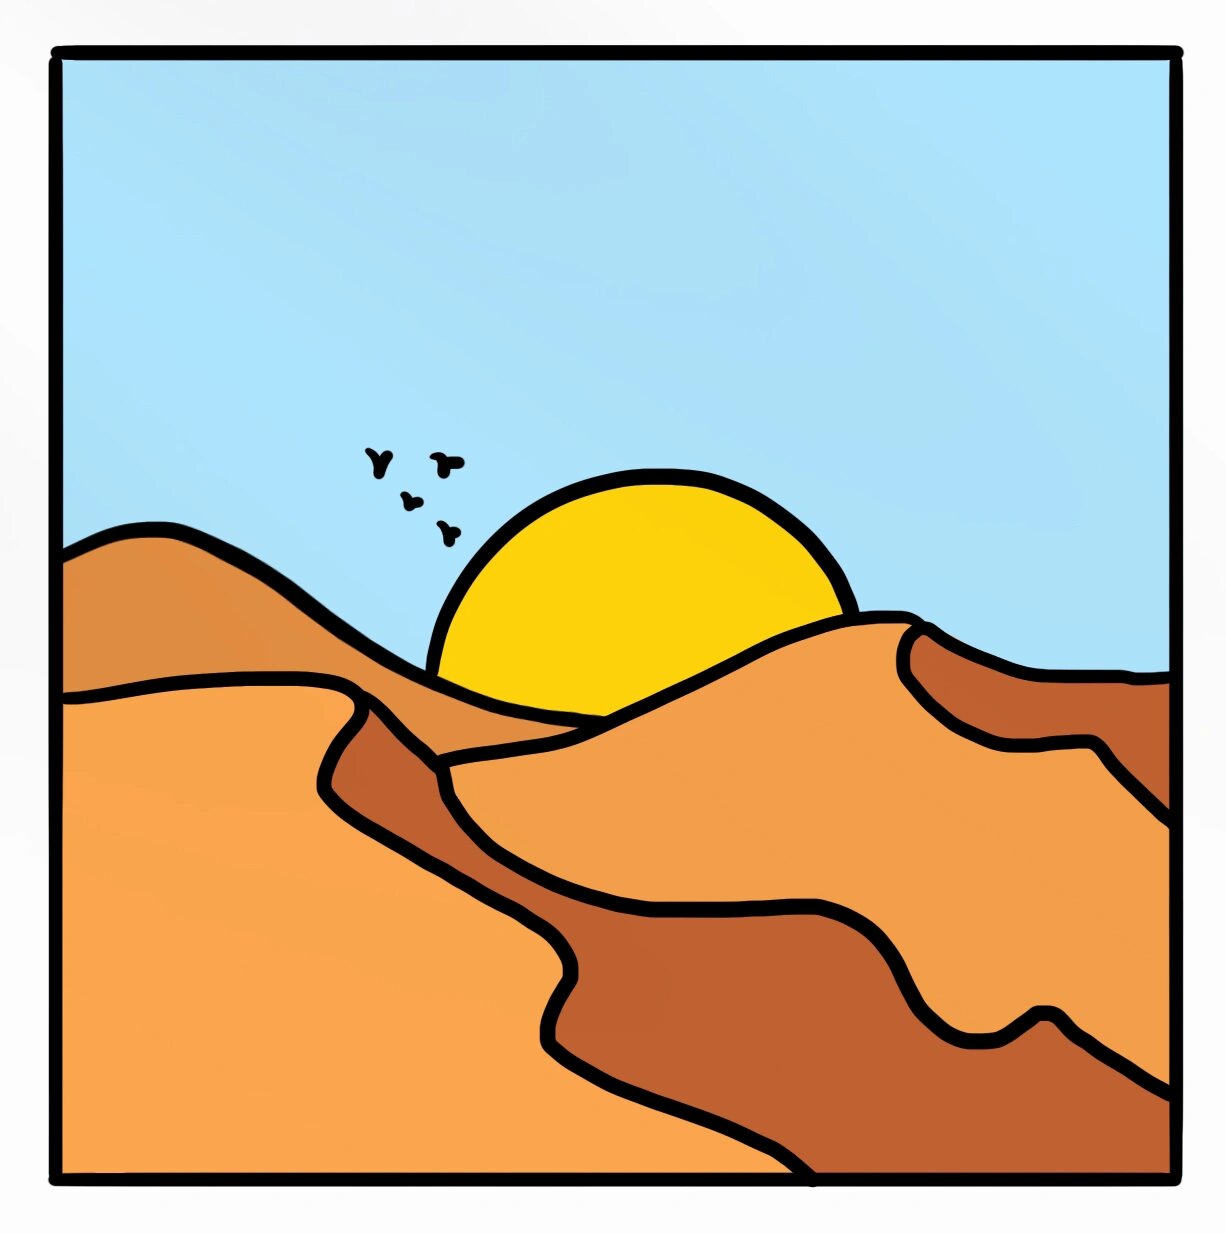 沙漠画法图片